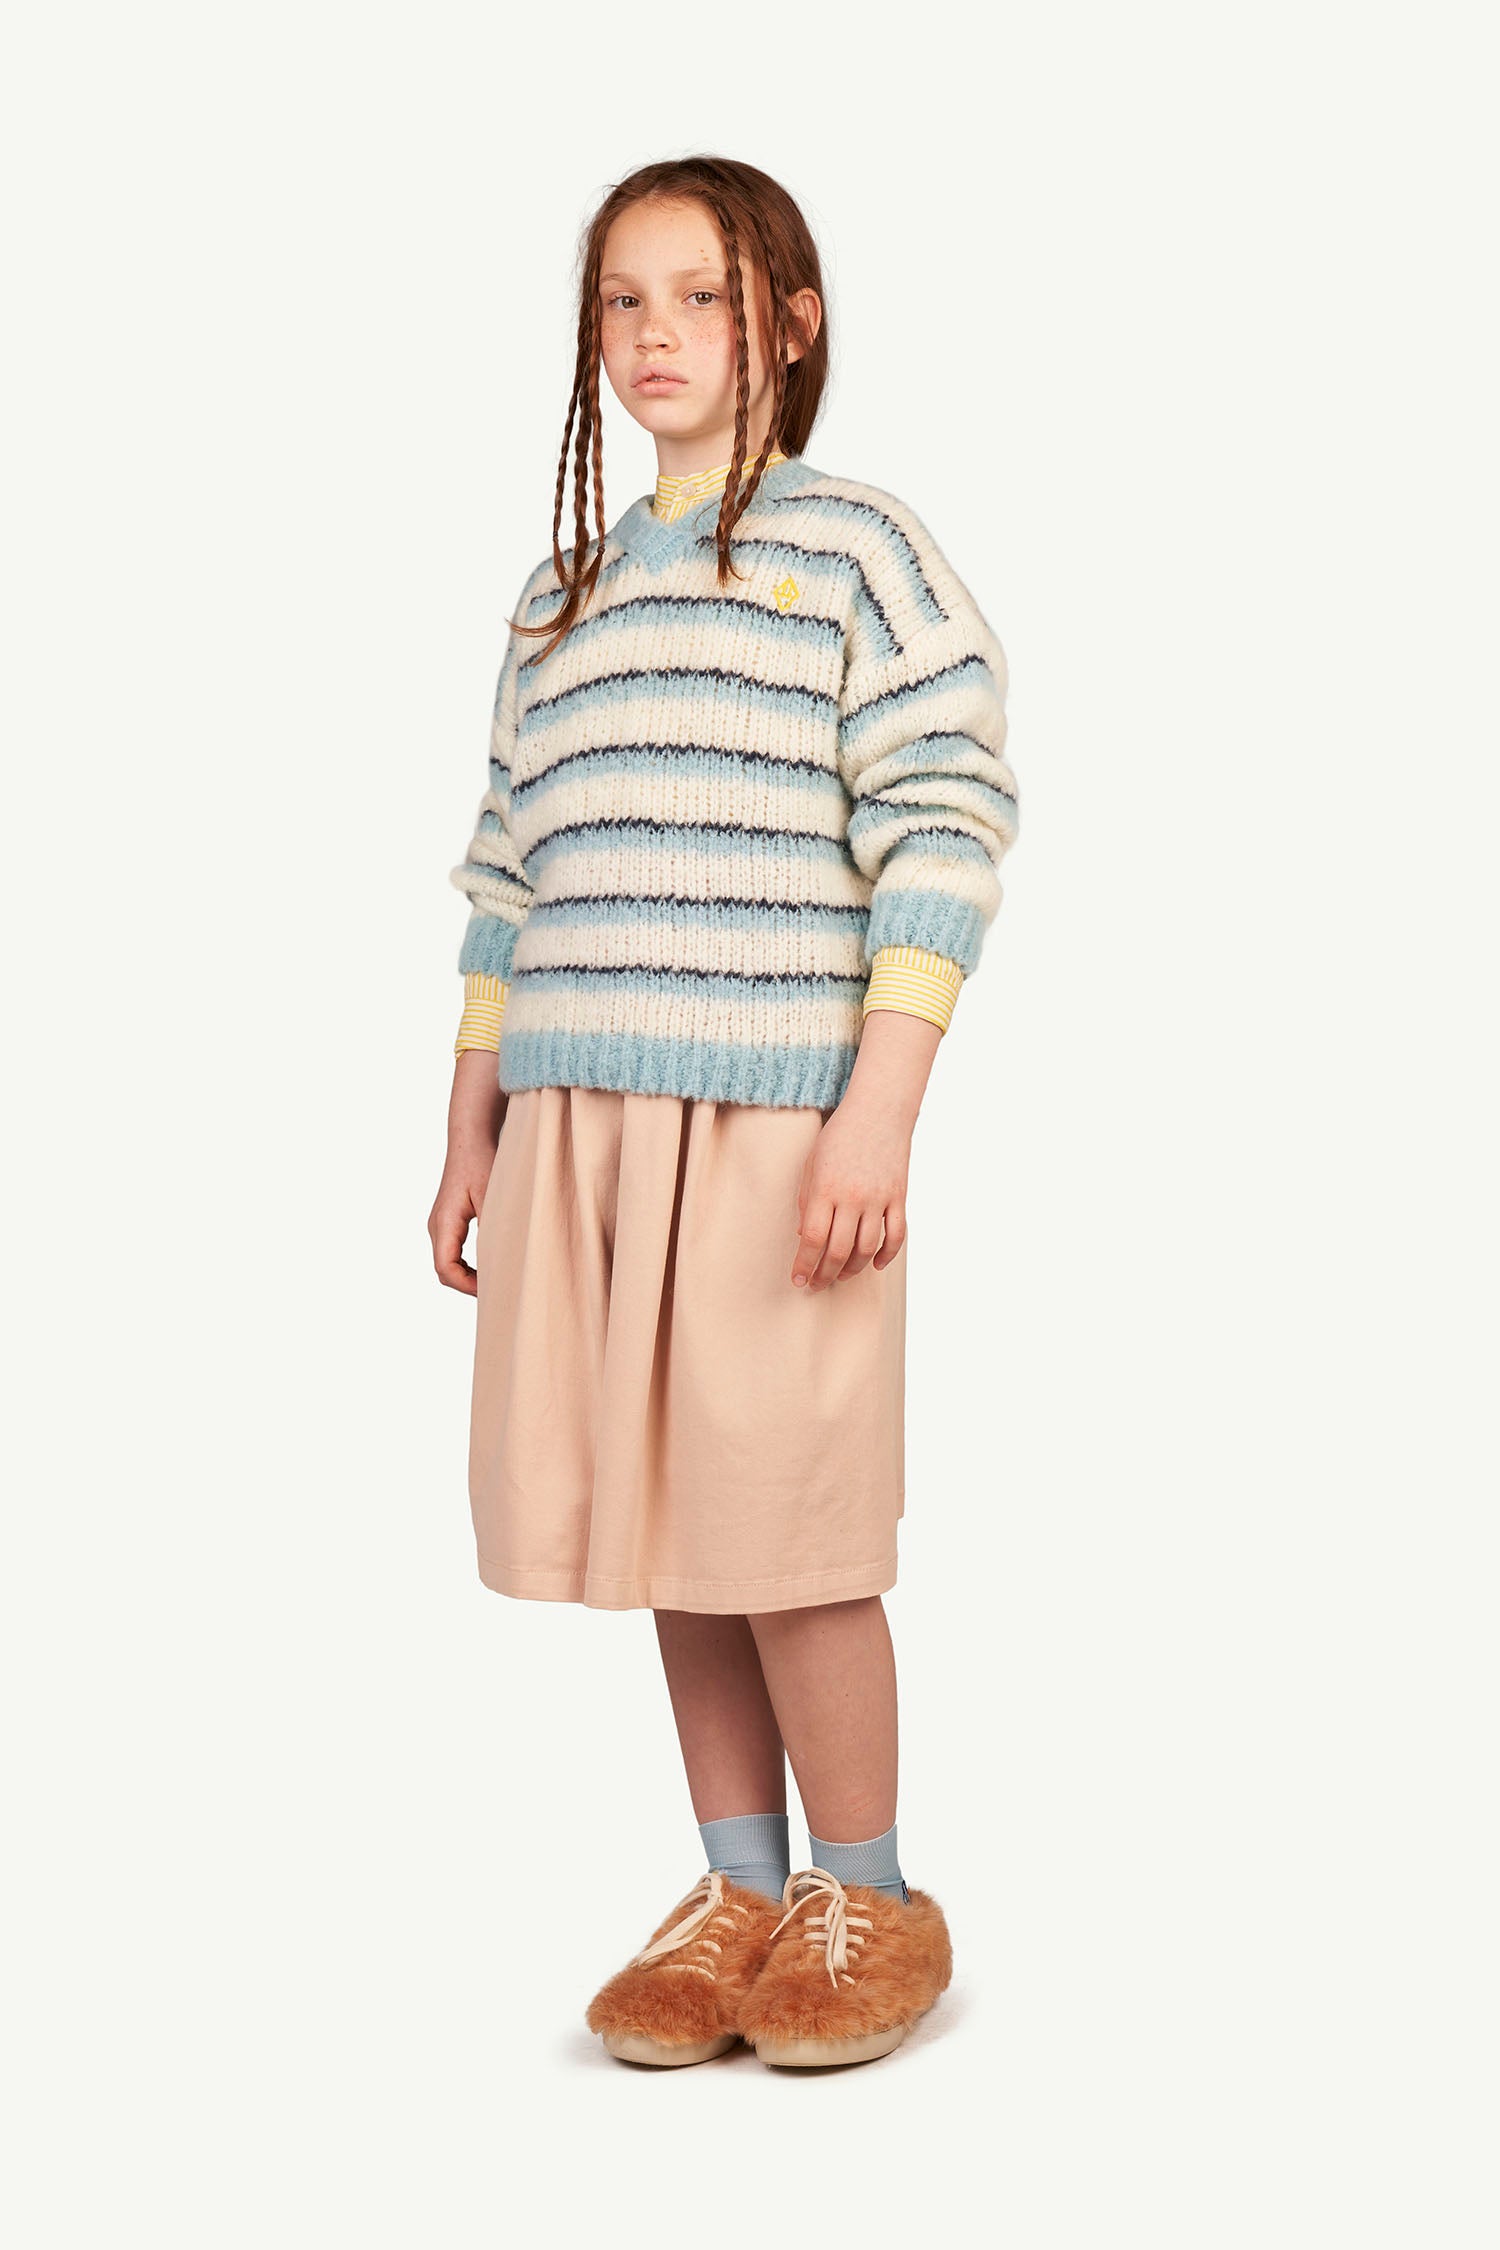 Girls Blue Stripes Wool Sweater